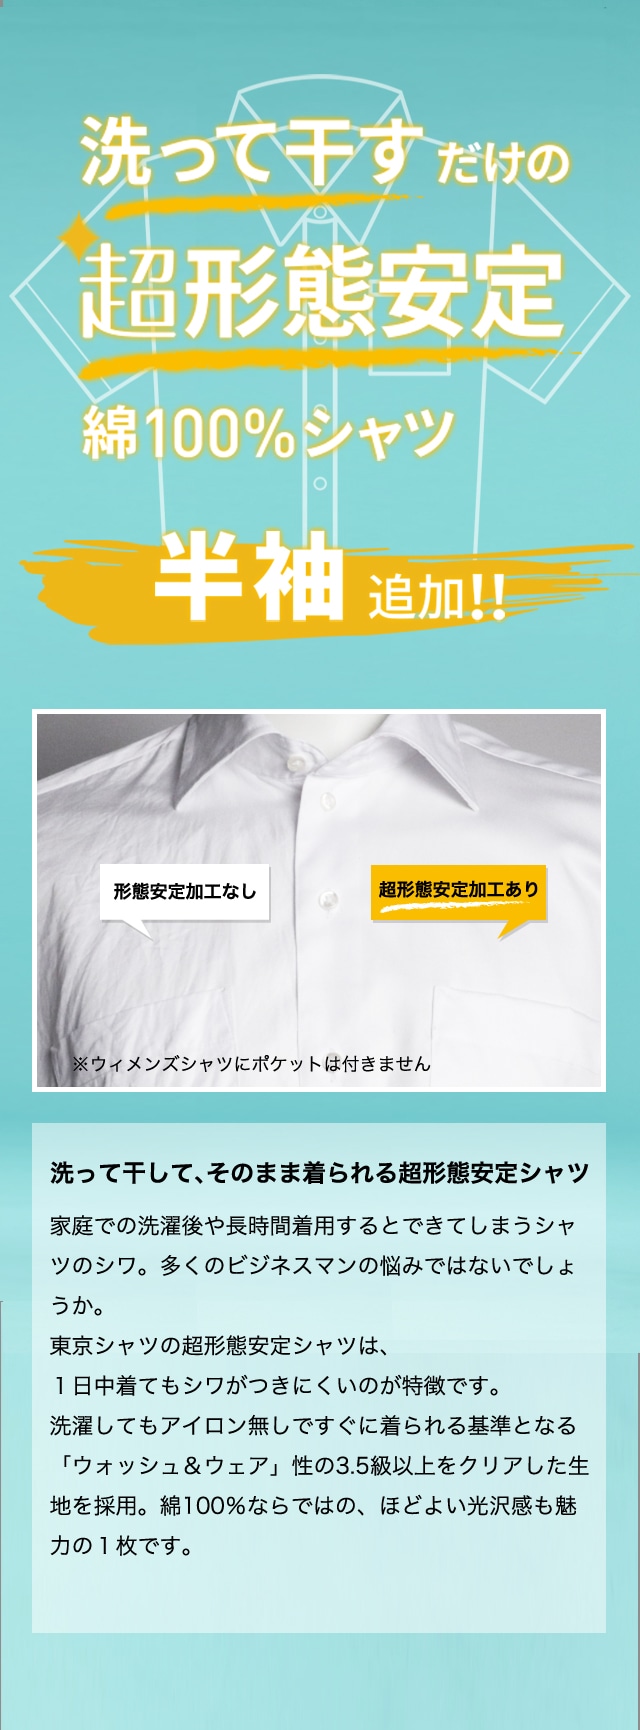 メンズワイシャツ ドレスシャツ 半袖 素材で選ぶ 超形態安定 並び順 価格 安い順 形態安定ワイシャツ専門店 ブリックハウスby東京シャツ 公式通販